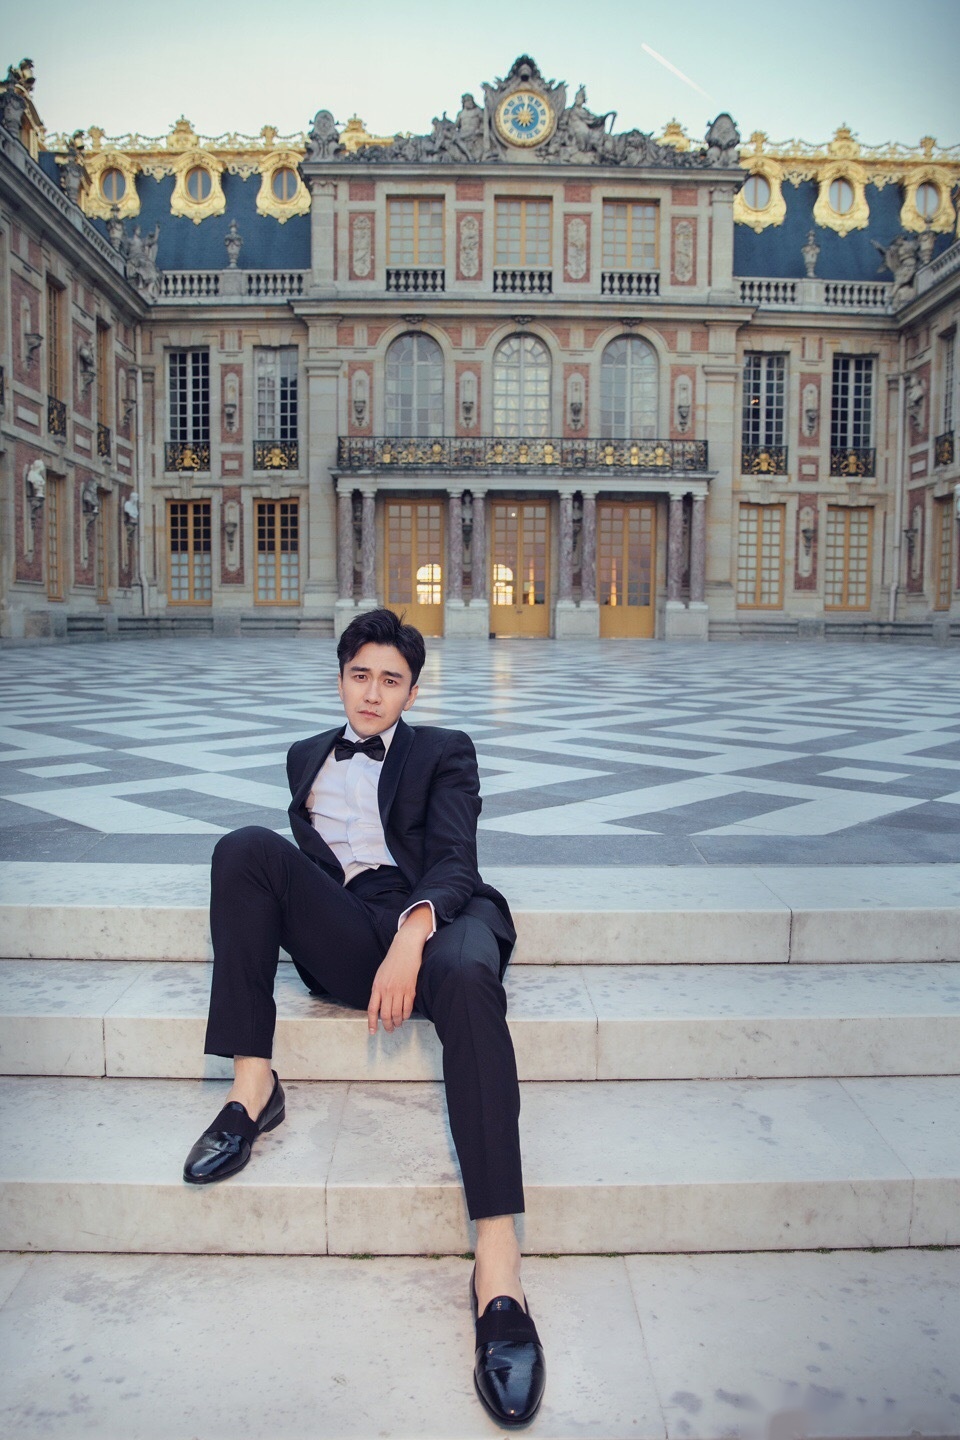 那日走在凡尔赛宫,它的大气和奢华展现在我的面前,我不禁想:路易十六